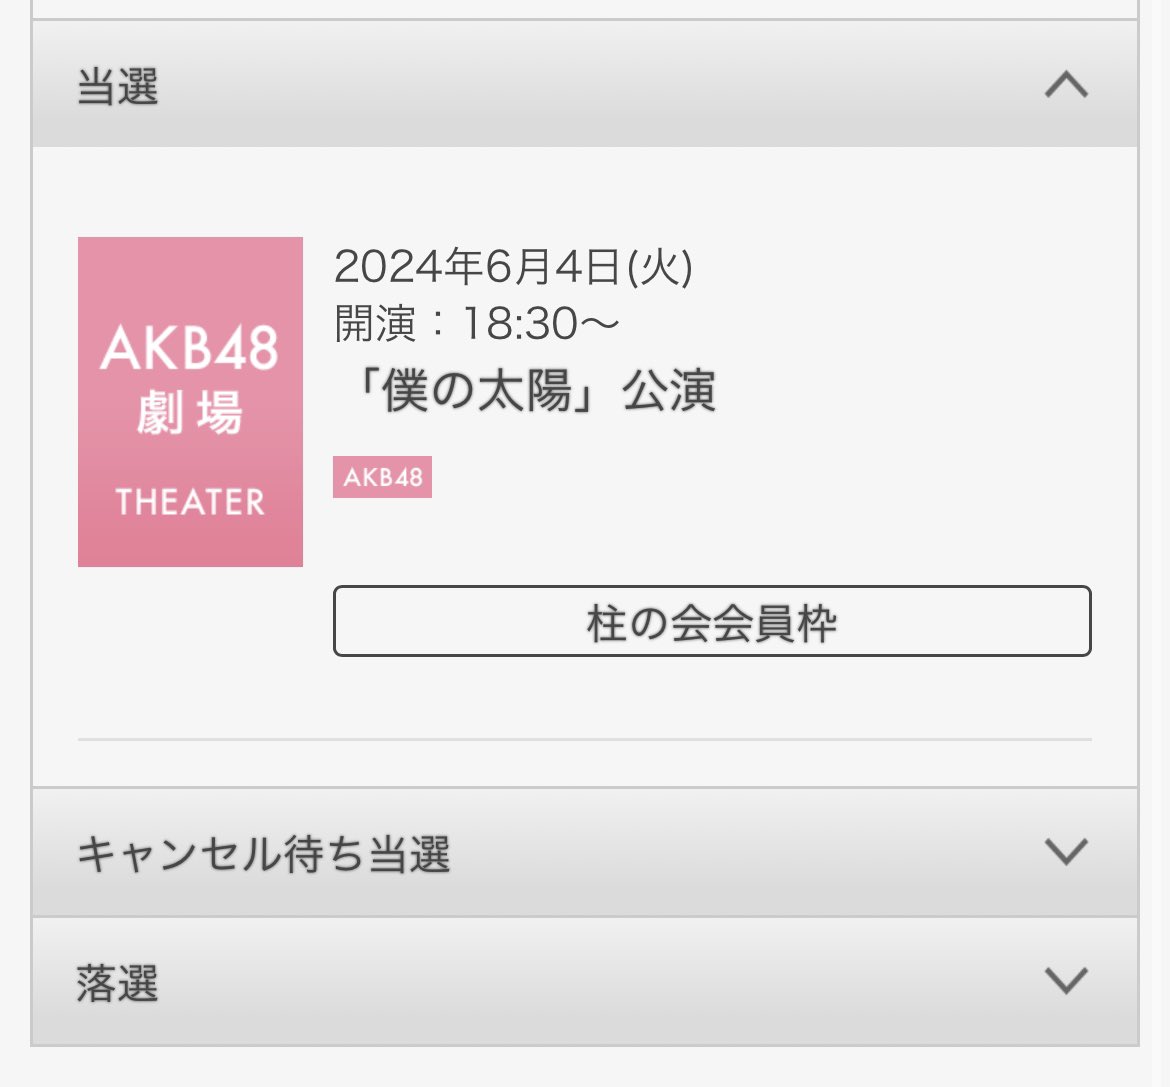 れみひゅー公演当たったー！

#徳永羚海
#坂川陽香
#AKB48